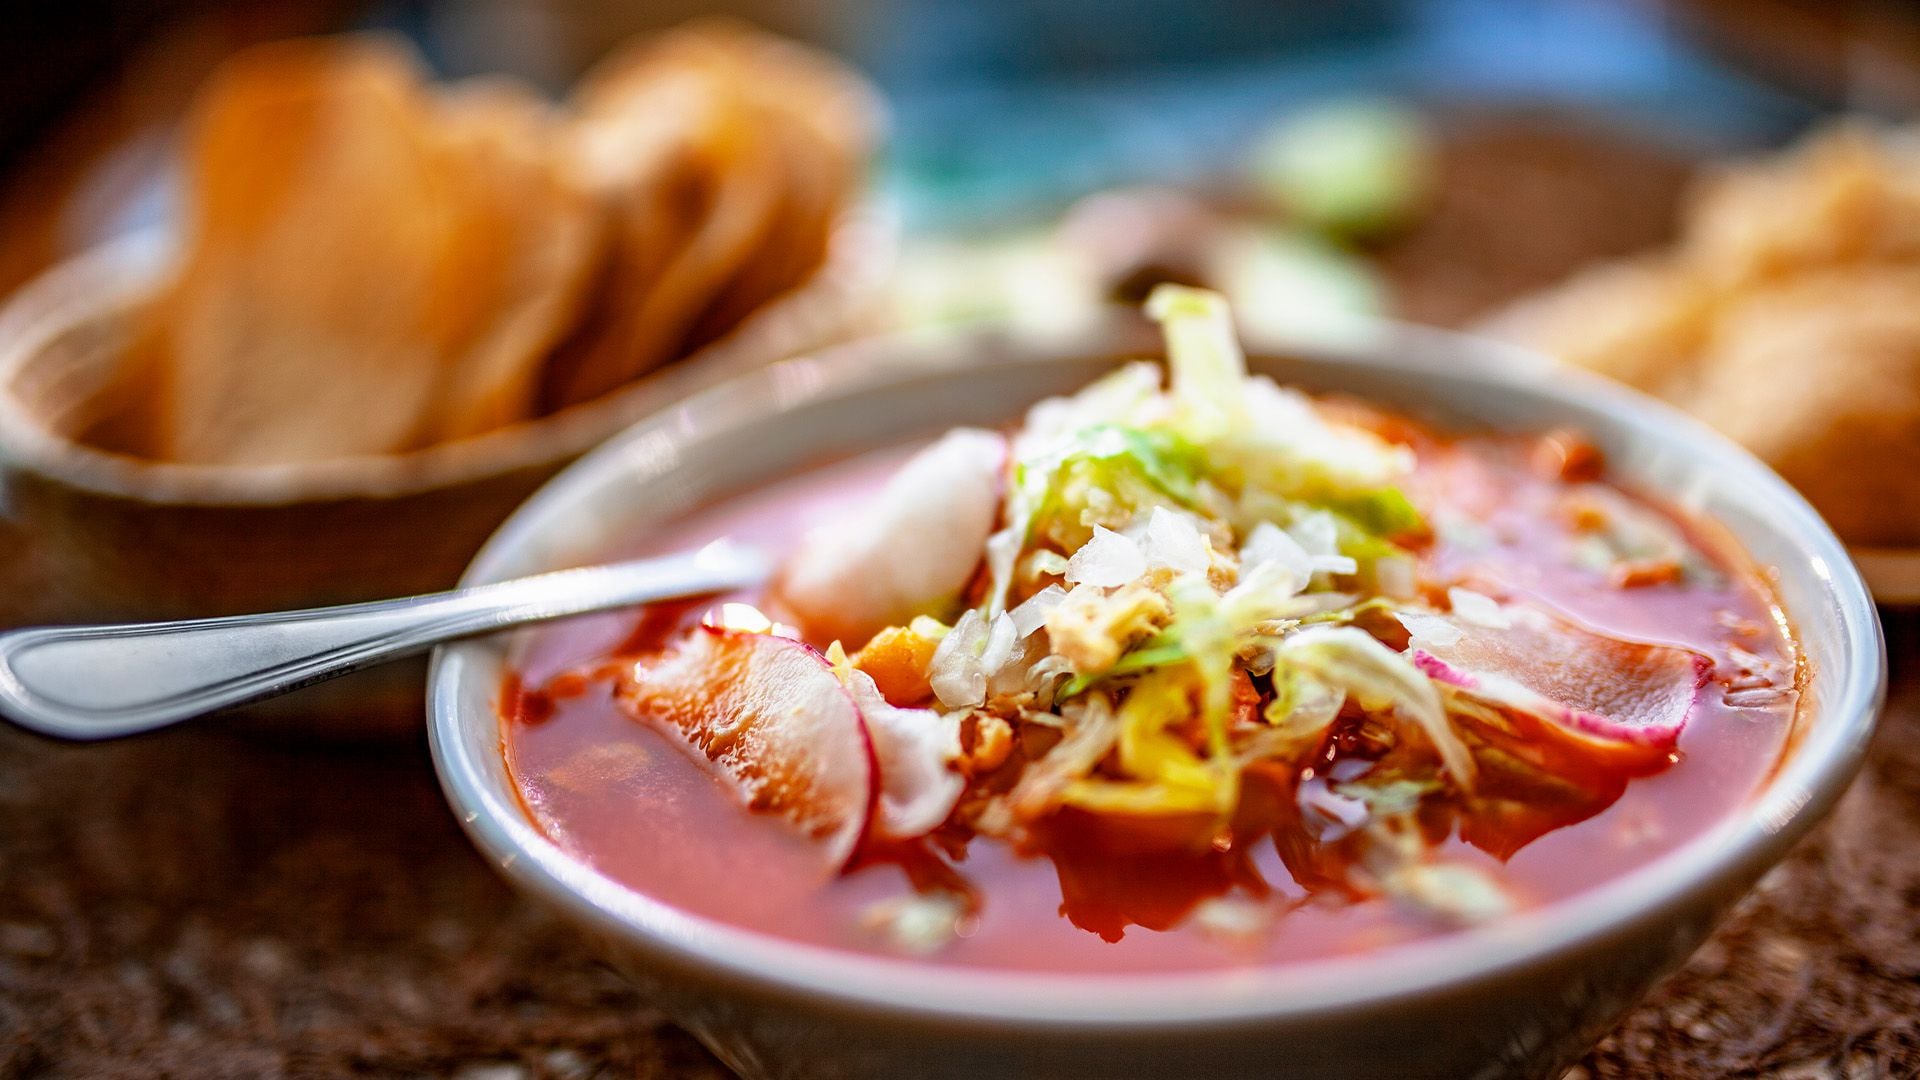 El pozole es un caldo hecho a base de granos de maízcacahuazintle. Su origen náhuatl lo convierte en el platillo más popular para celebrar la Independencia. (Getty Images).